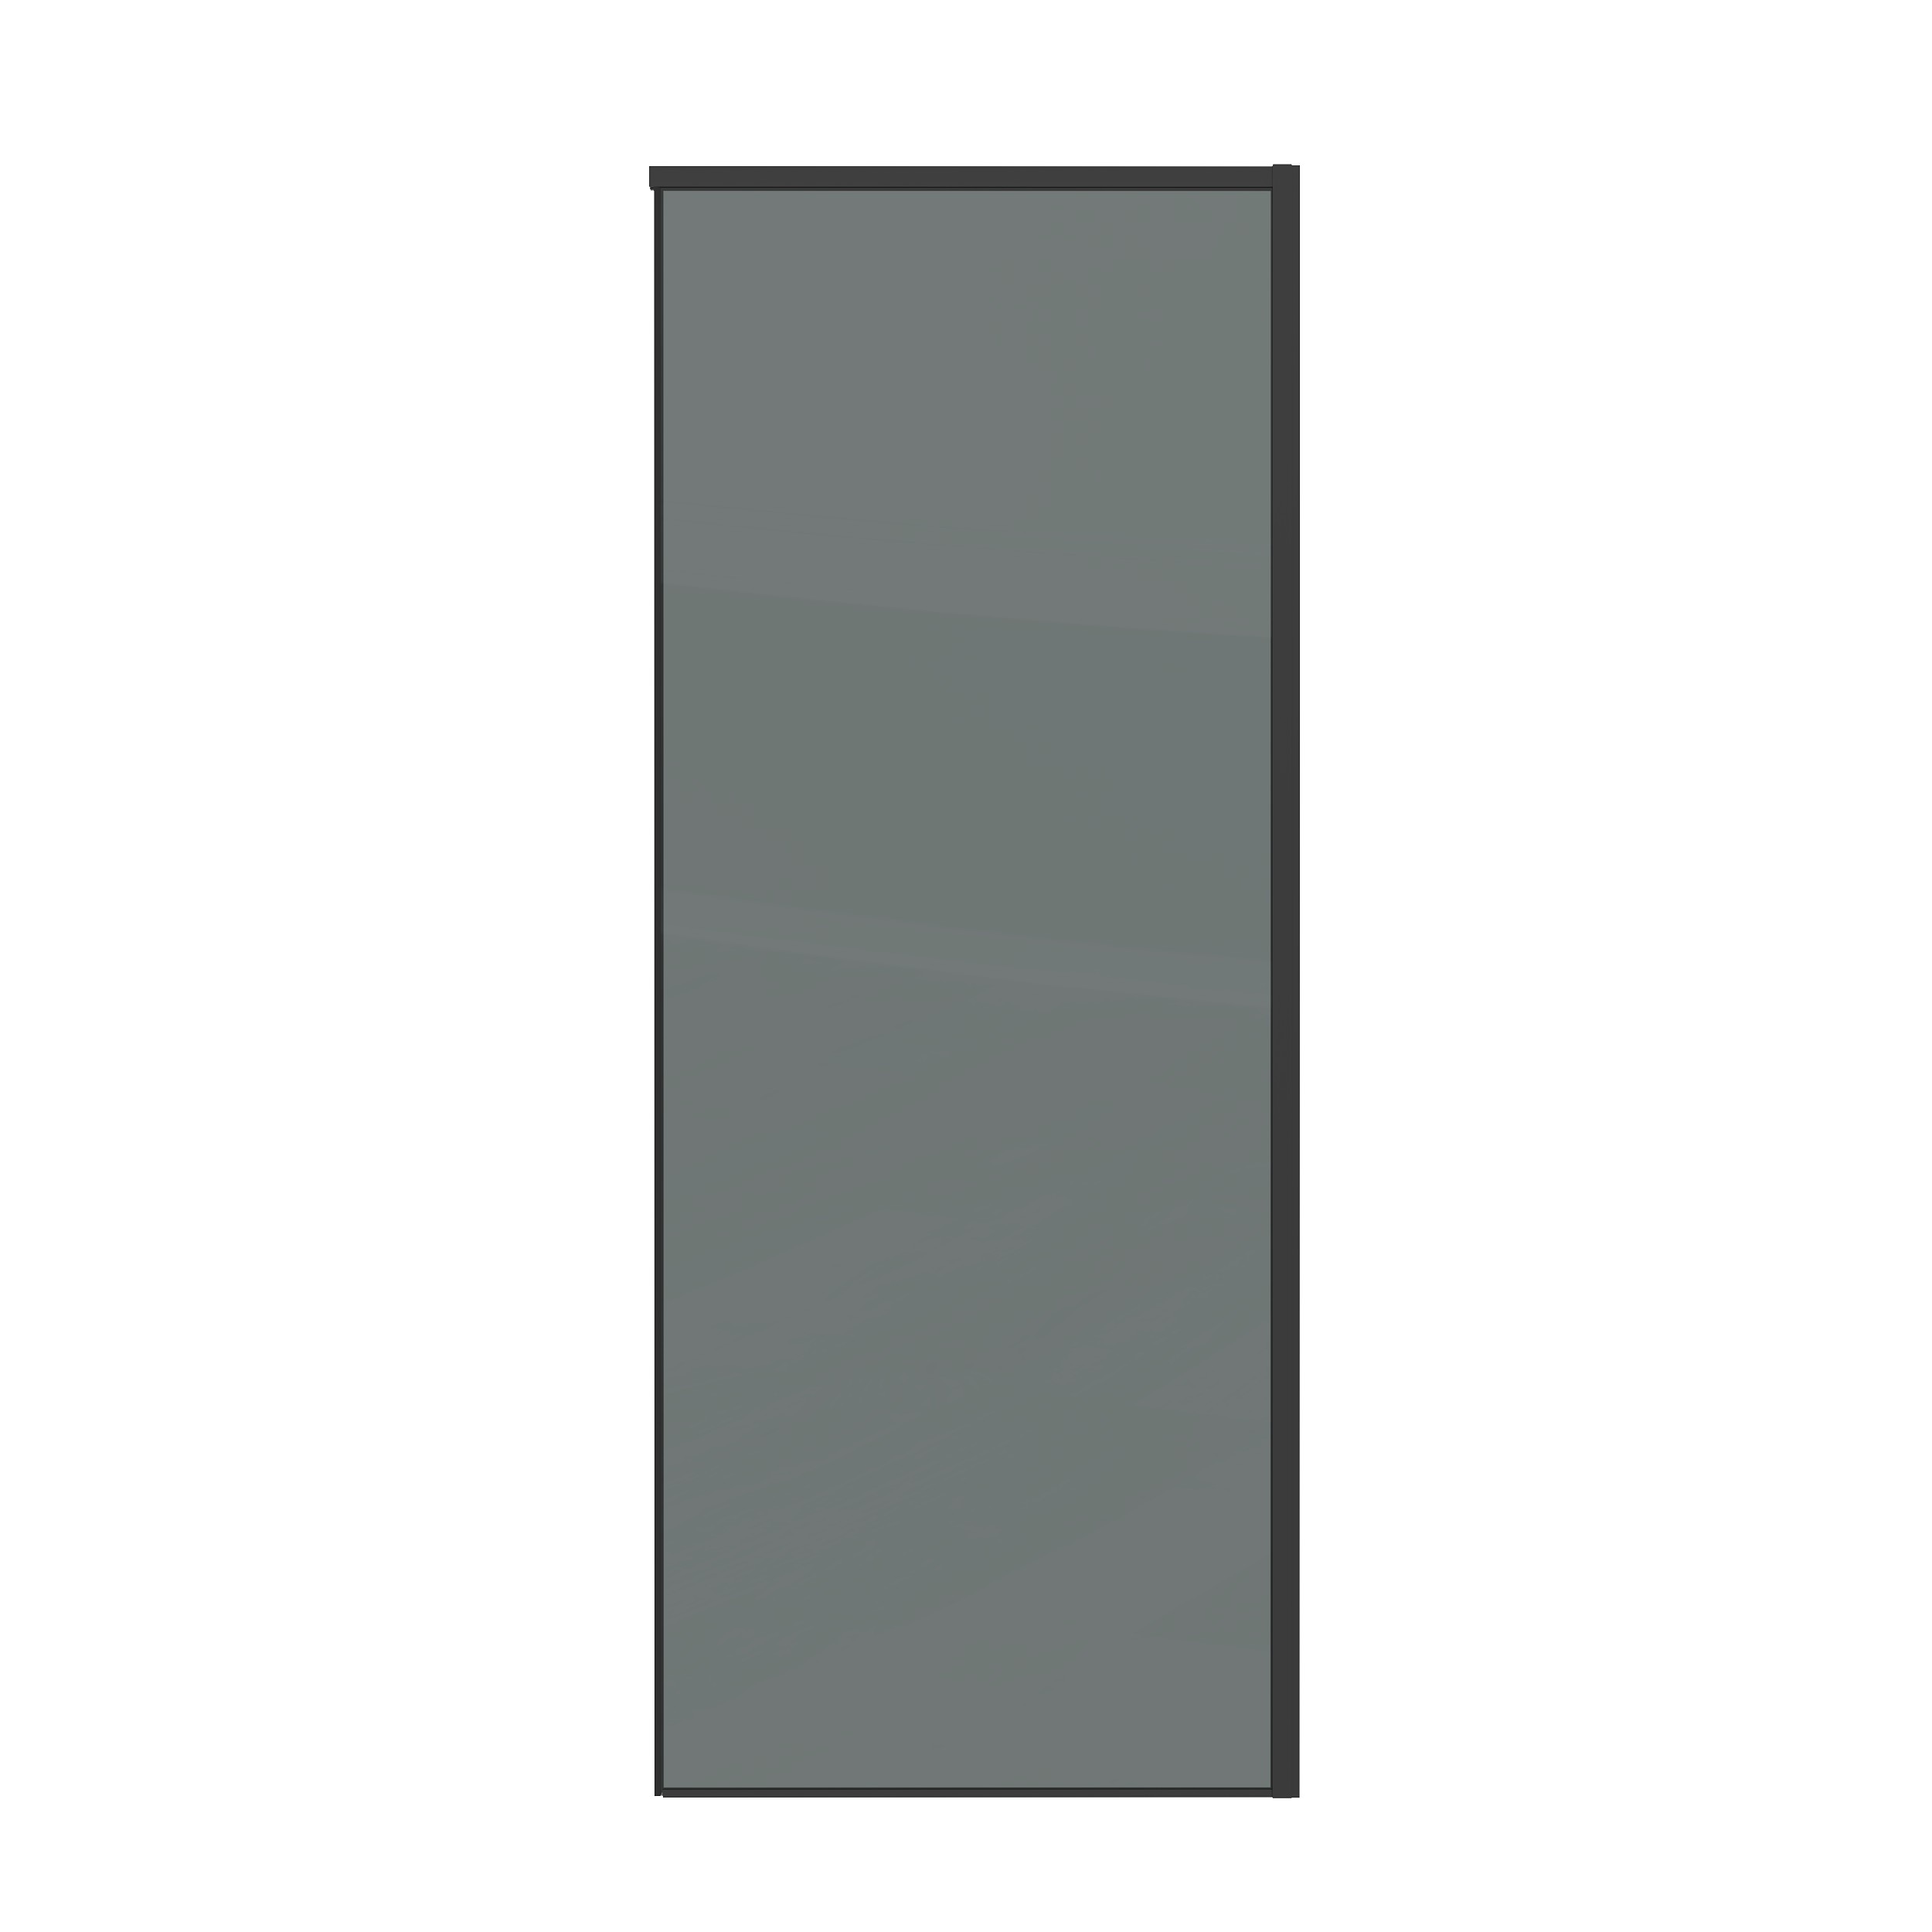 Боковая стенка Grossman Galaxy 80x195 200.K33.01.80.21.10 стекло тонированное, профиль черный матовый - фото 1